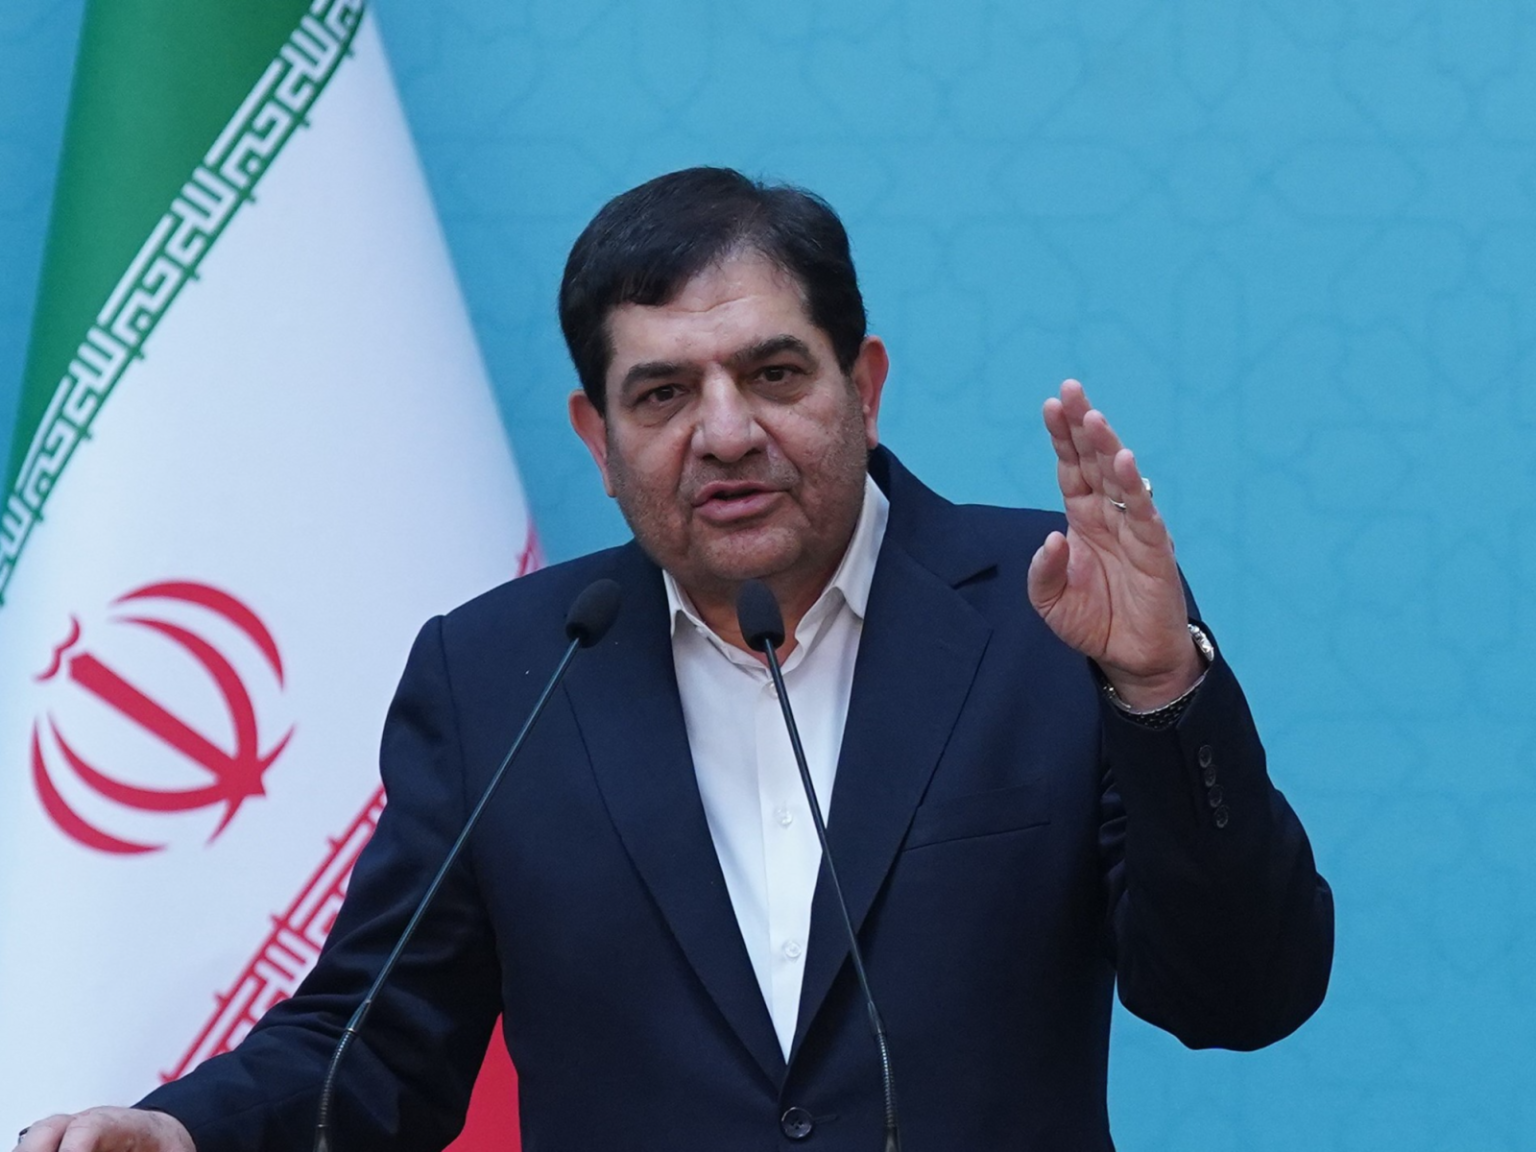 الرئيس الإيراني بالوكالة: سنستمر بقوة في نهج رئيسي تجاه العراق